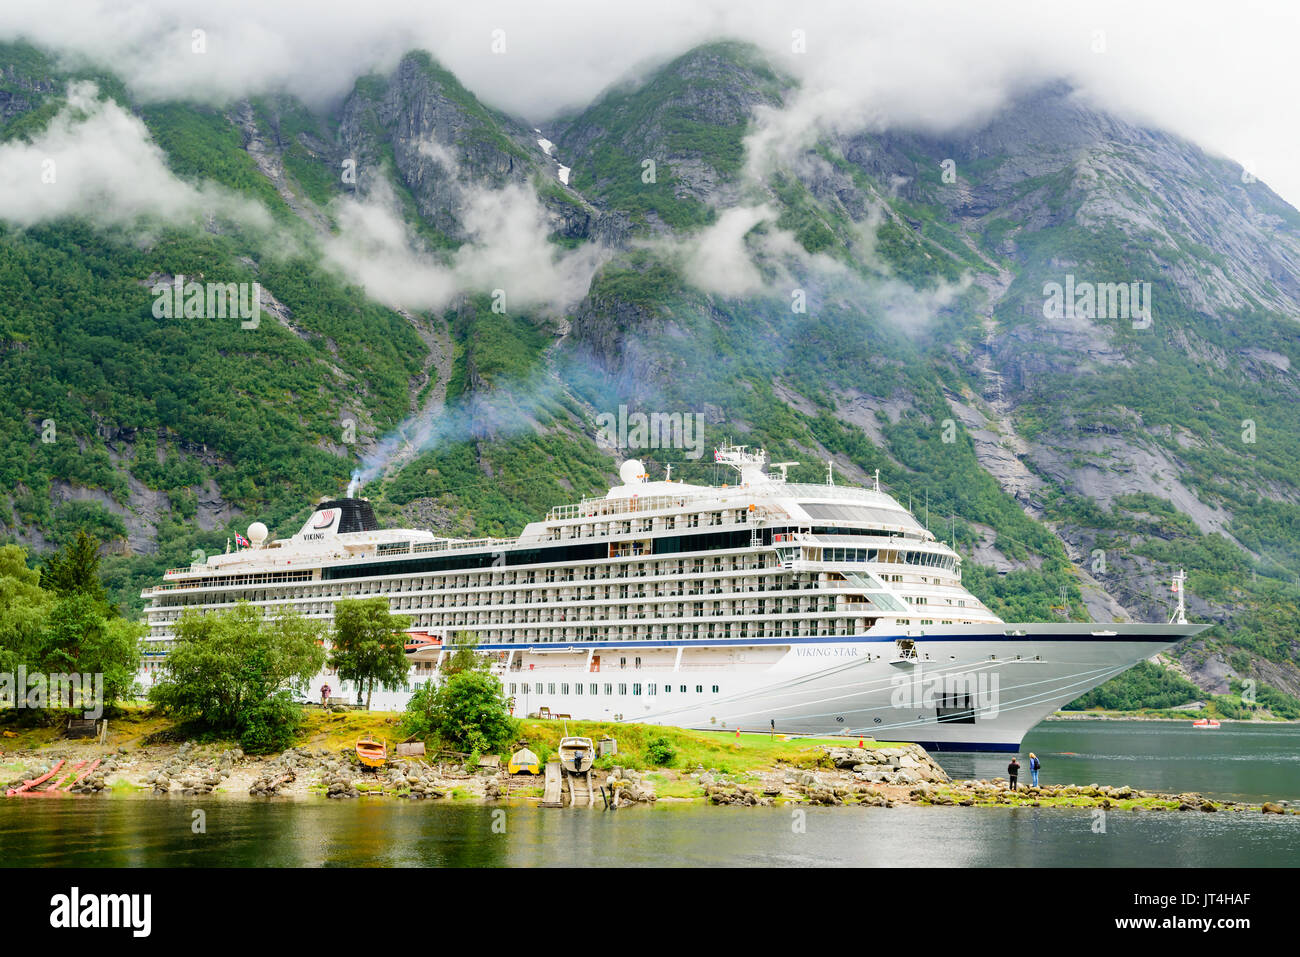 Eidfjord, Norwegen - 31. Juli 2017: Reisedokumentation der luxuriösen Kreuzfahrtschiffe Viking Star günstig im Fjord. Hohe und steile Berge im Hintergrund Stockfoto